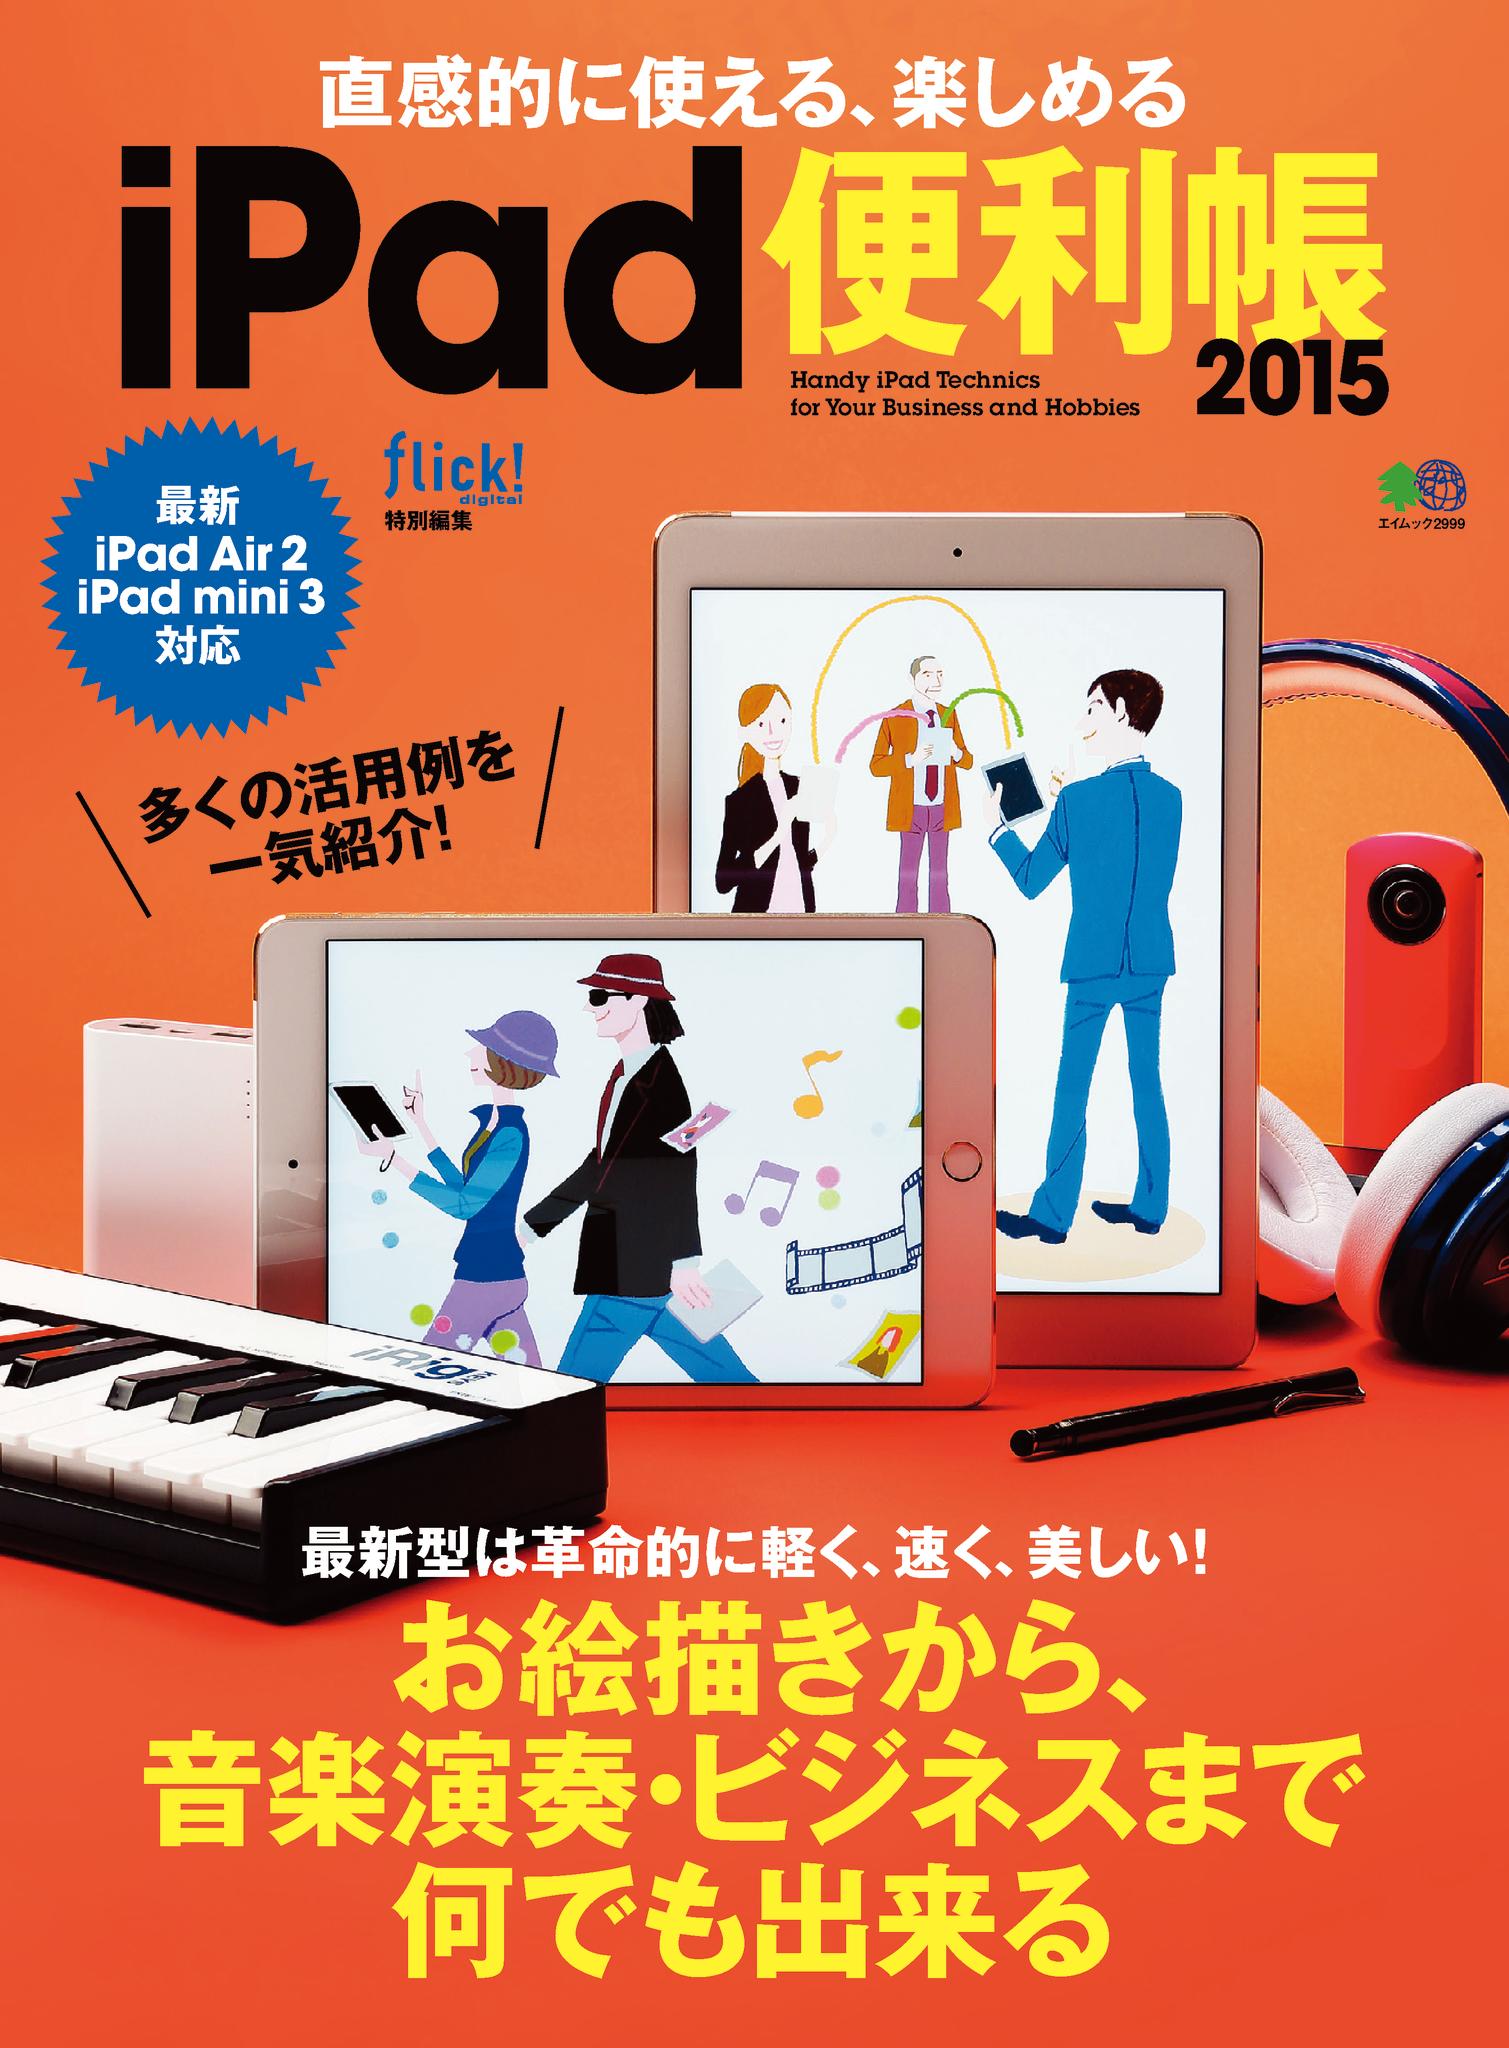 直感的に使える、楽しめるiPad便利帳2015